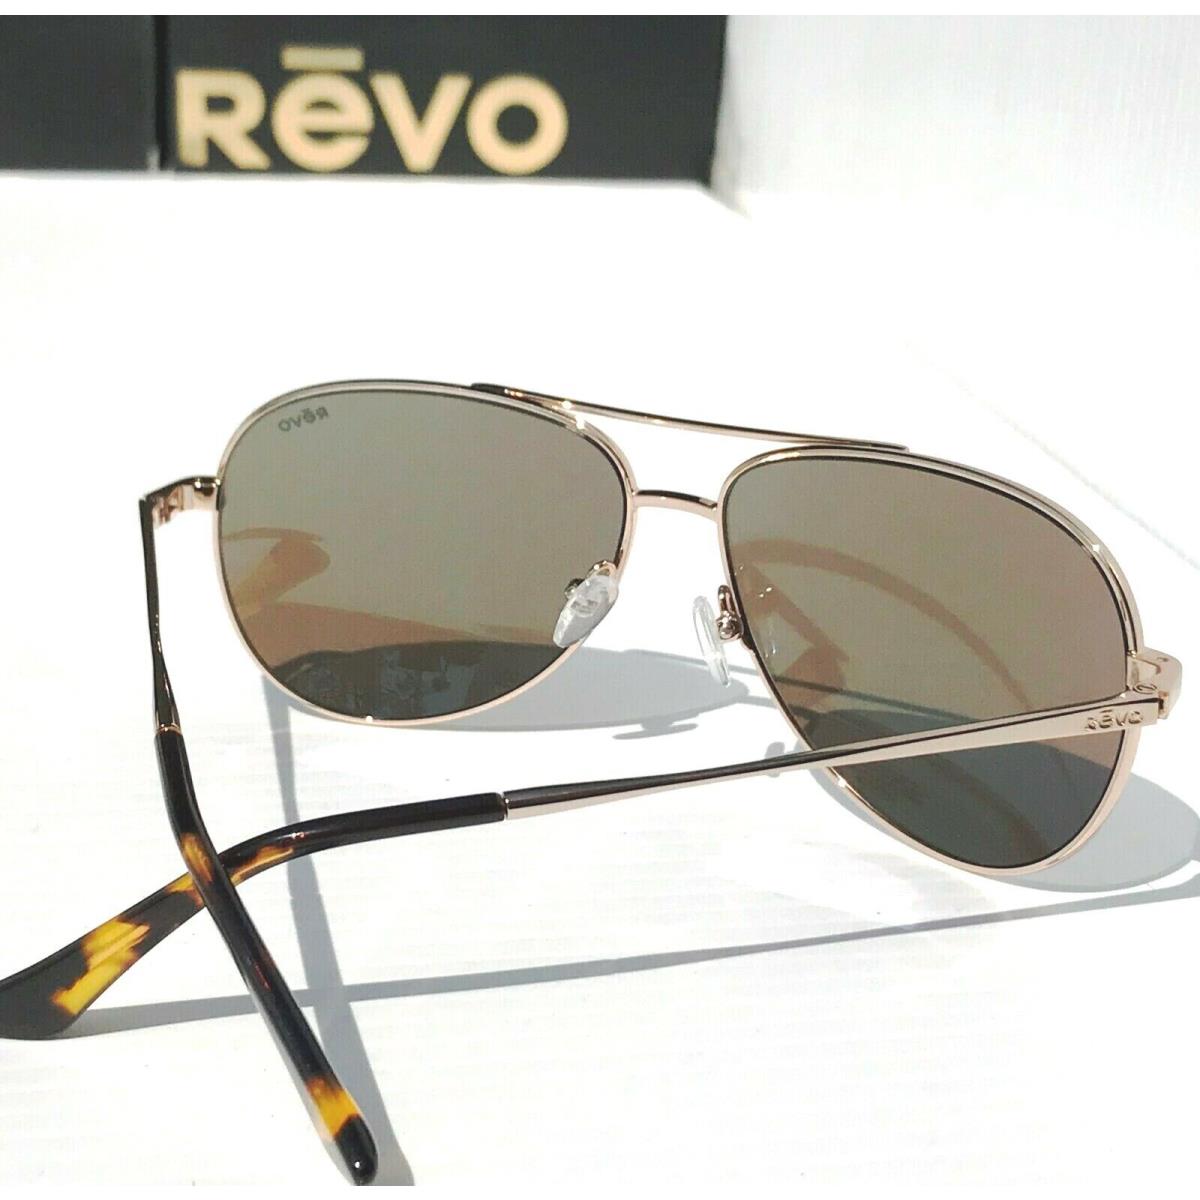 Revo sunglasses  - Gold Frame, Gold Lens